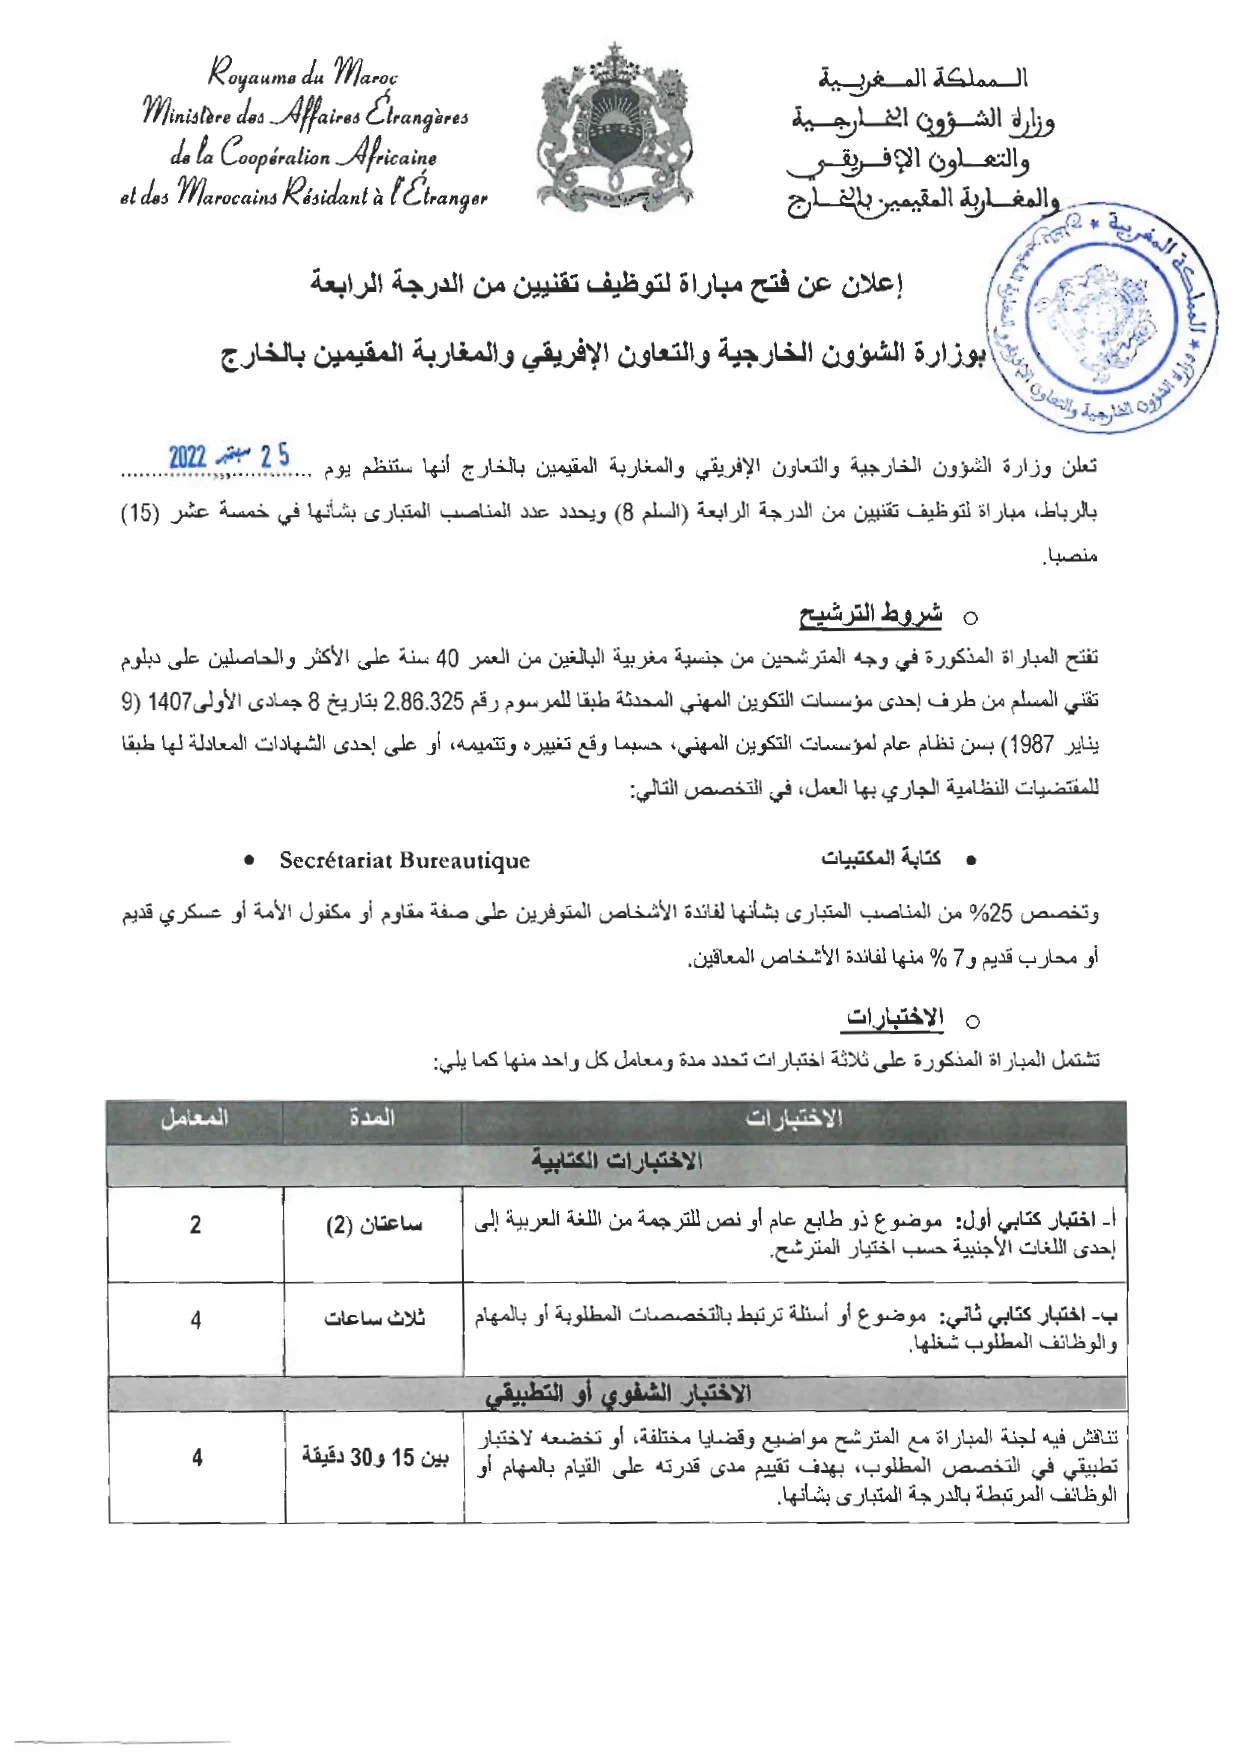 Concours Ministère des Affaires Etrangères 2022: Technicien de 4ème grade ~ Echelle 8 (15 postes)